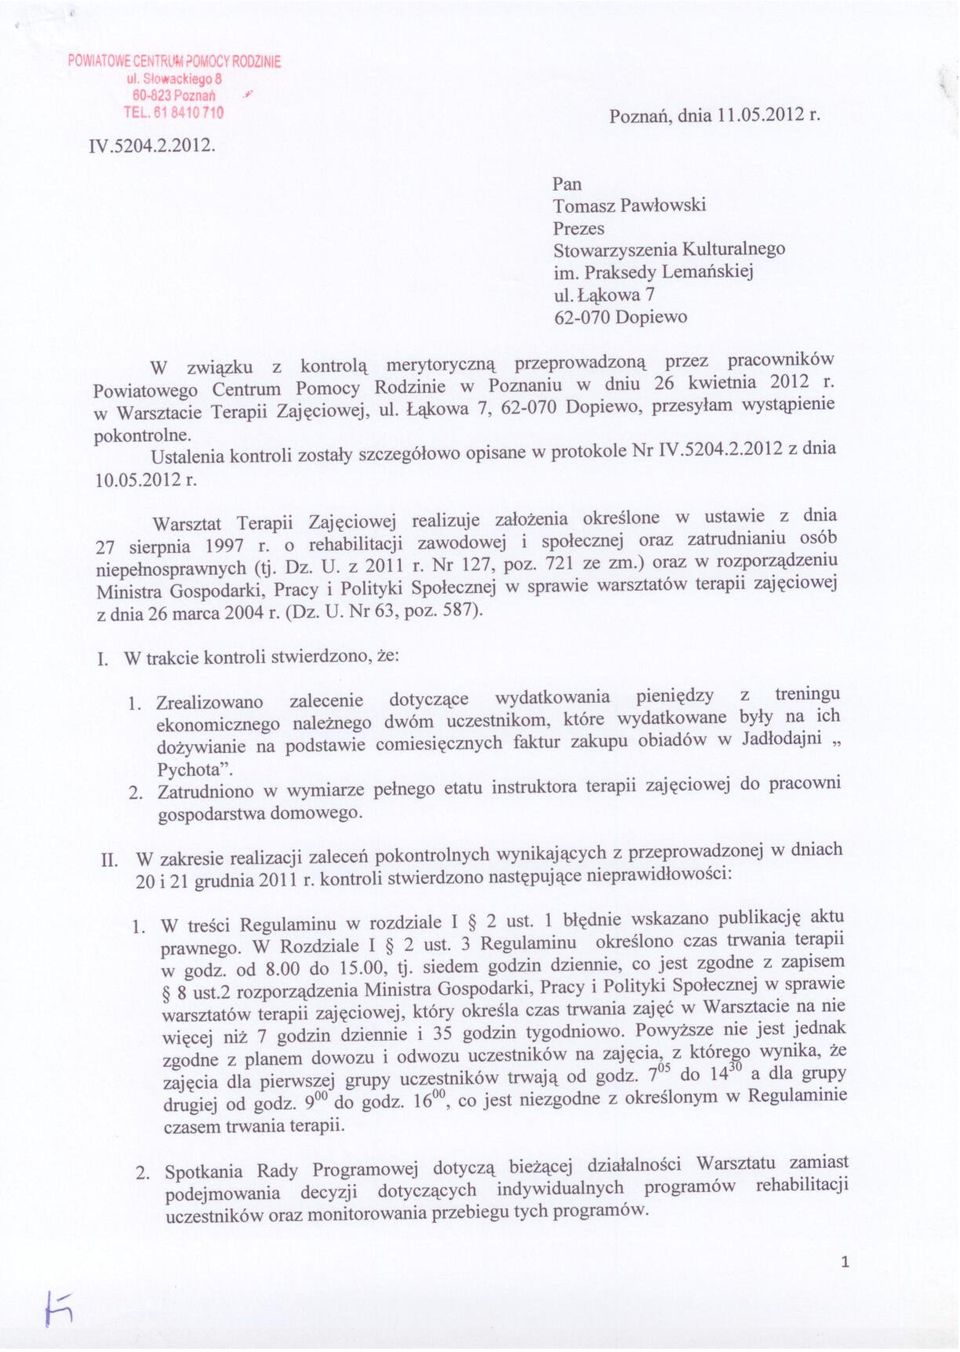 w Warsztacie Terapii Zajęciowej, ul. Łąkowa 7, 62-070 Dopiewo, przesyłam wystąpienie pokontrolne. Ustalenia kontroli zostały szczegółowo opisane w protokole Nr IV.5204.2.2012 z dnia 10.05.2012 r.